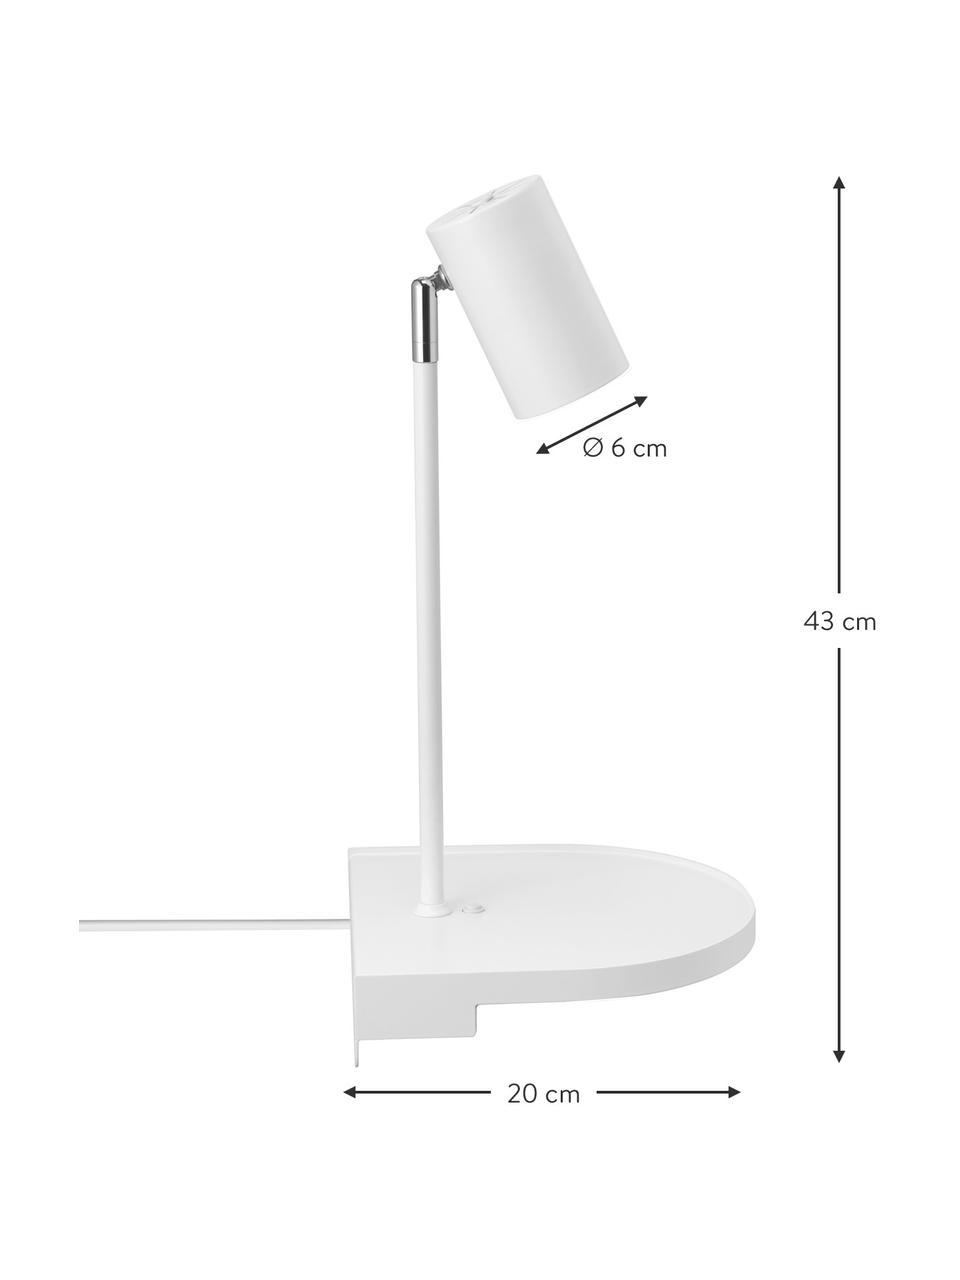 Moderní nástěnné svítidlo se zástrčkou Colly, Bílá, Š 20 cm, V 43 cm